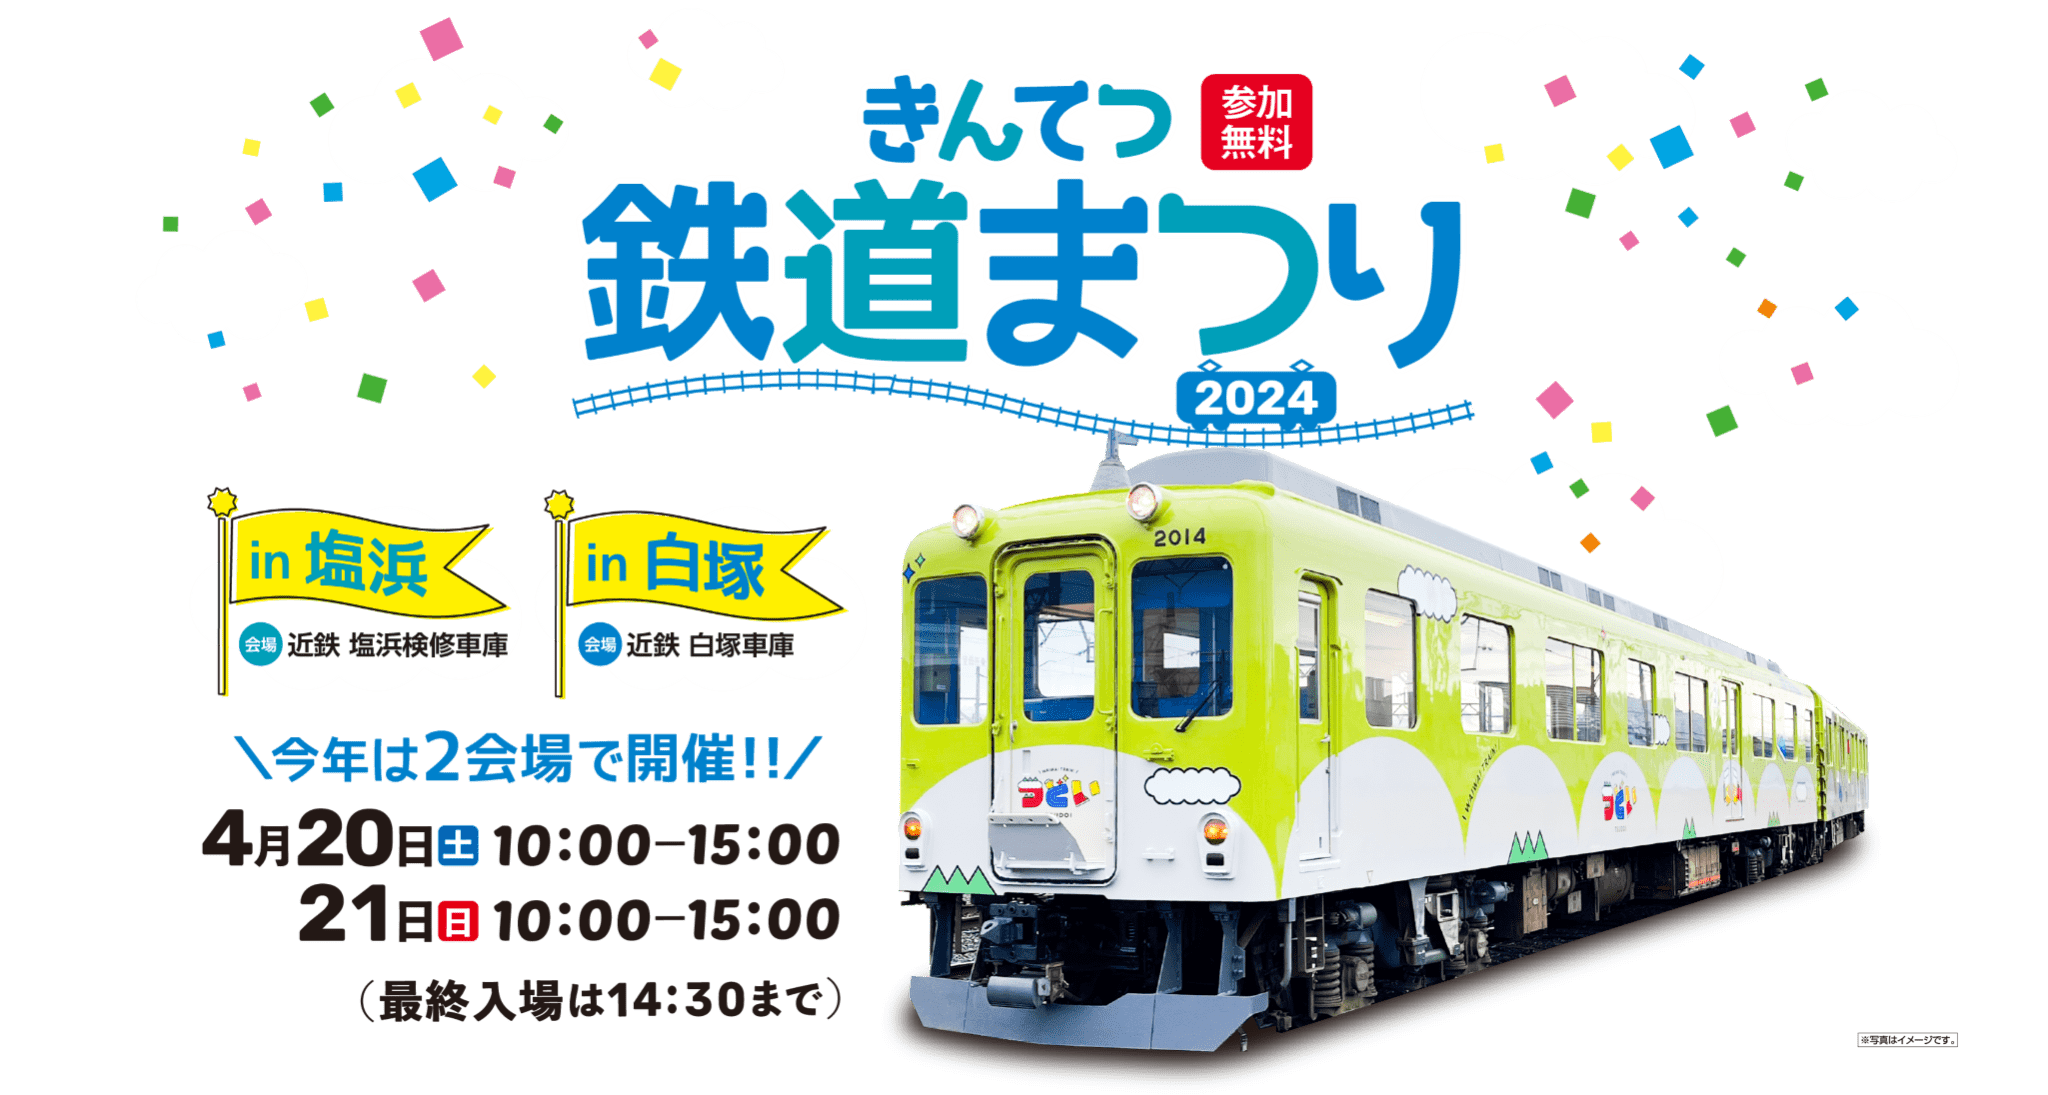 きんてつ鉄道まつり2024 in 塩浜・白塚